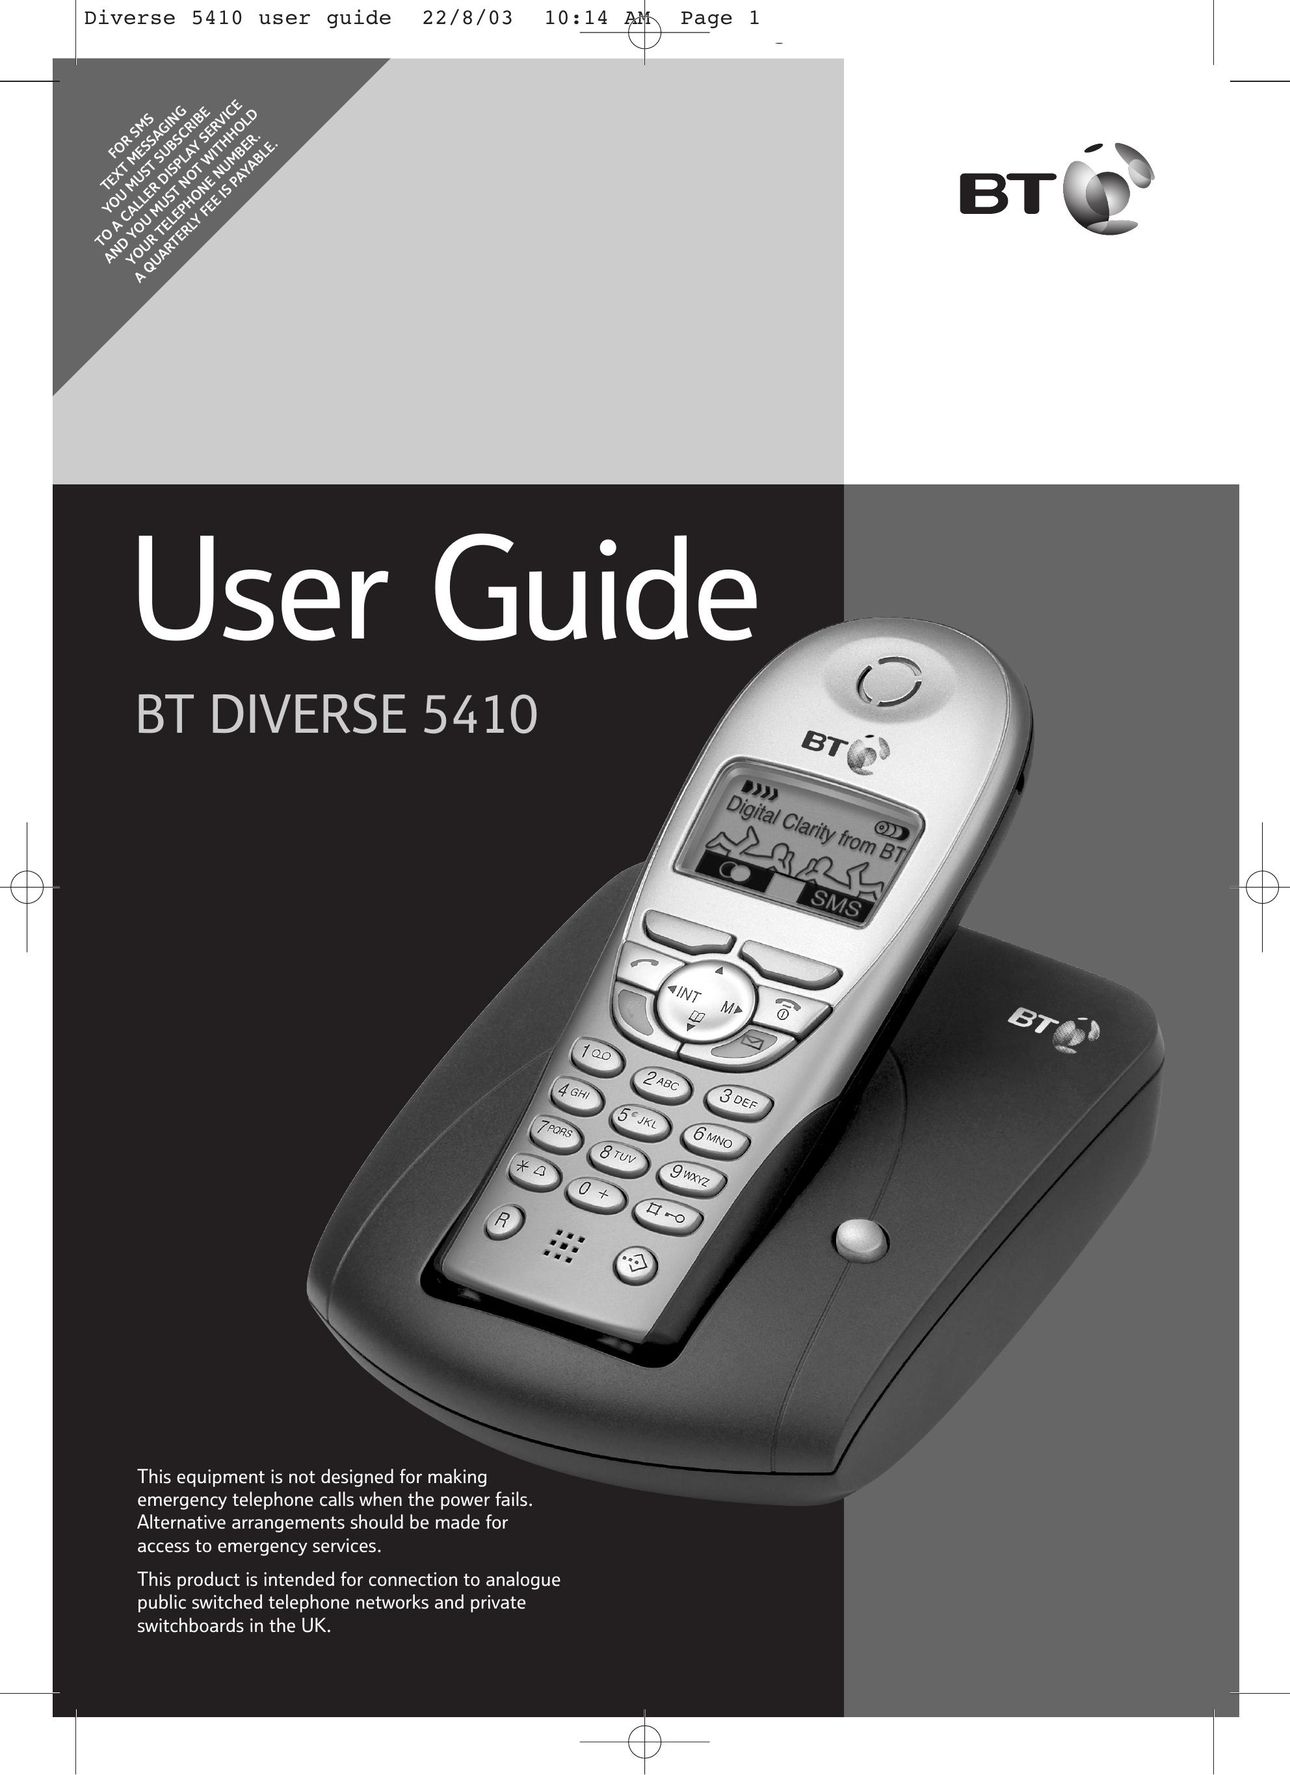 BT BT DIVERSE 5410 Telephone User Manual